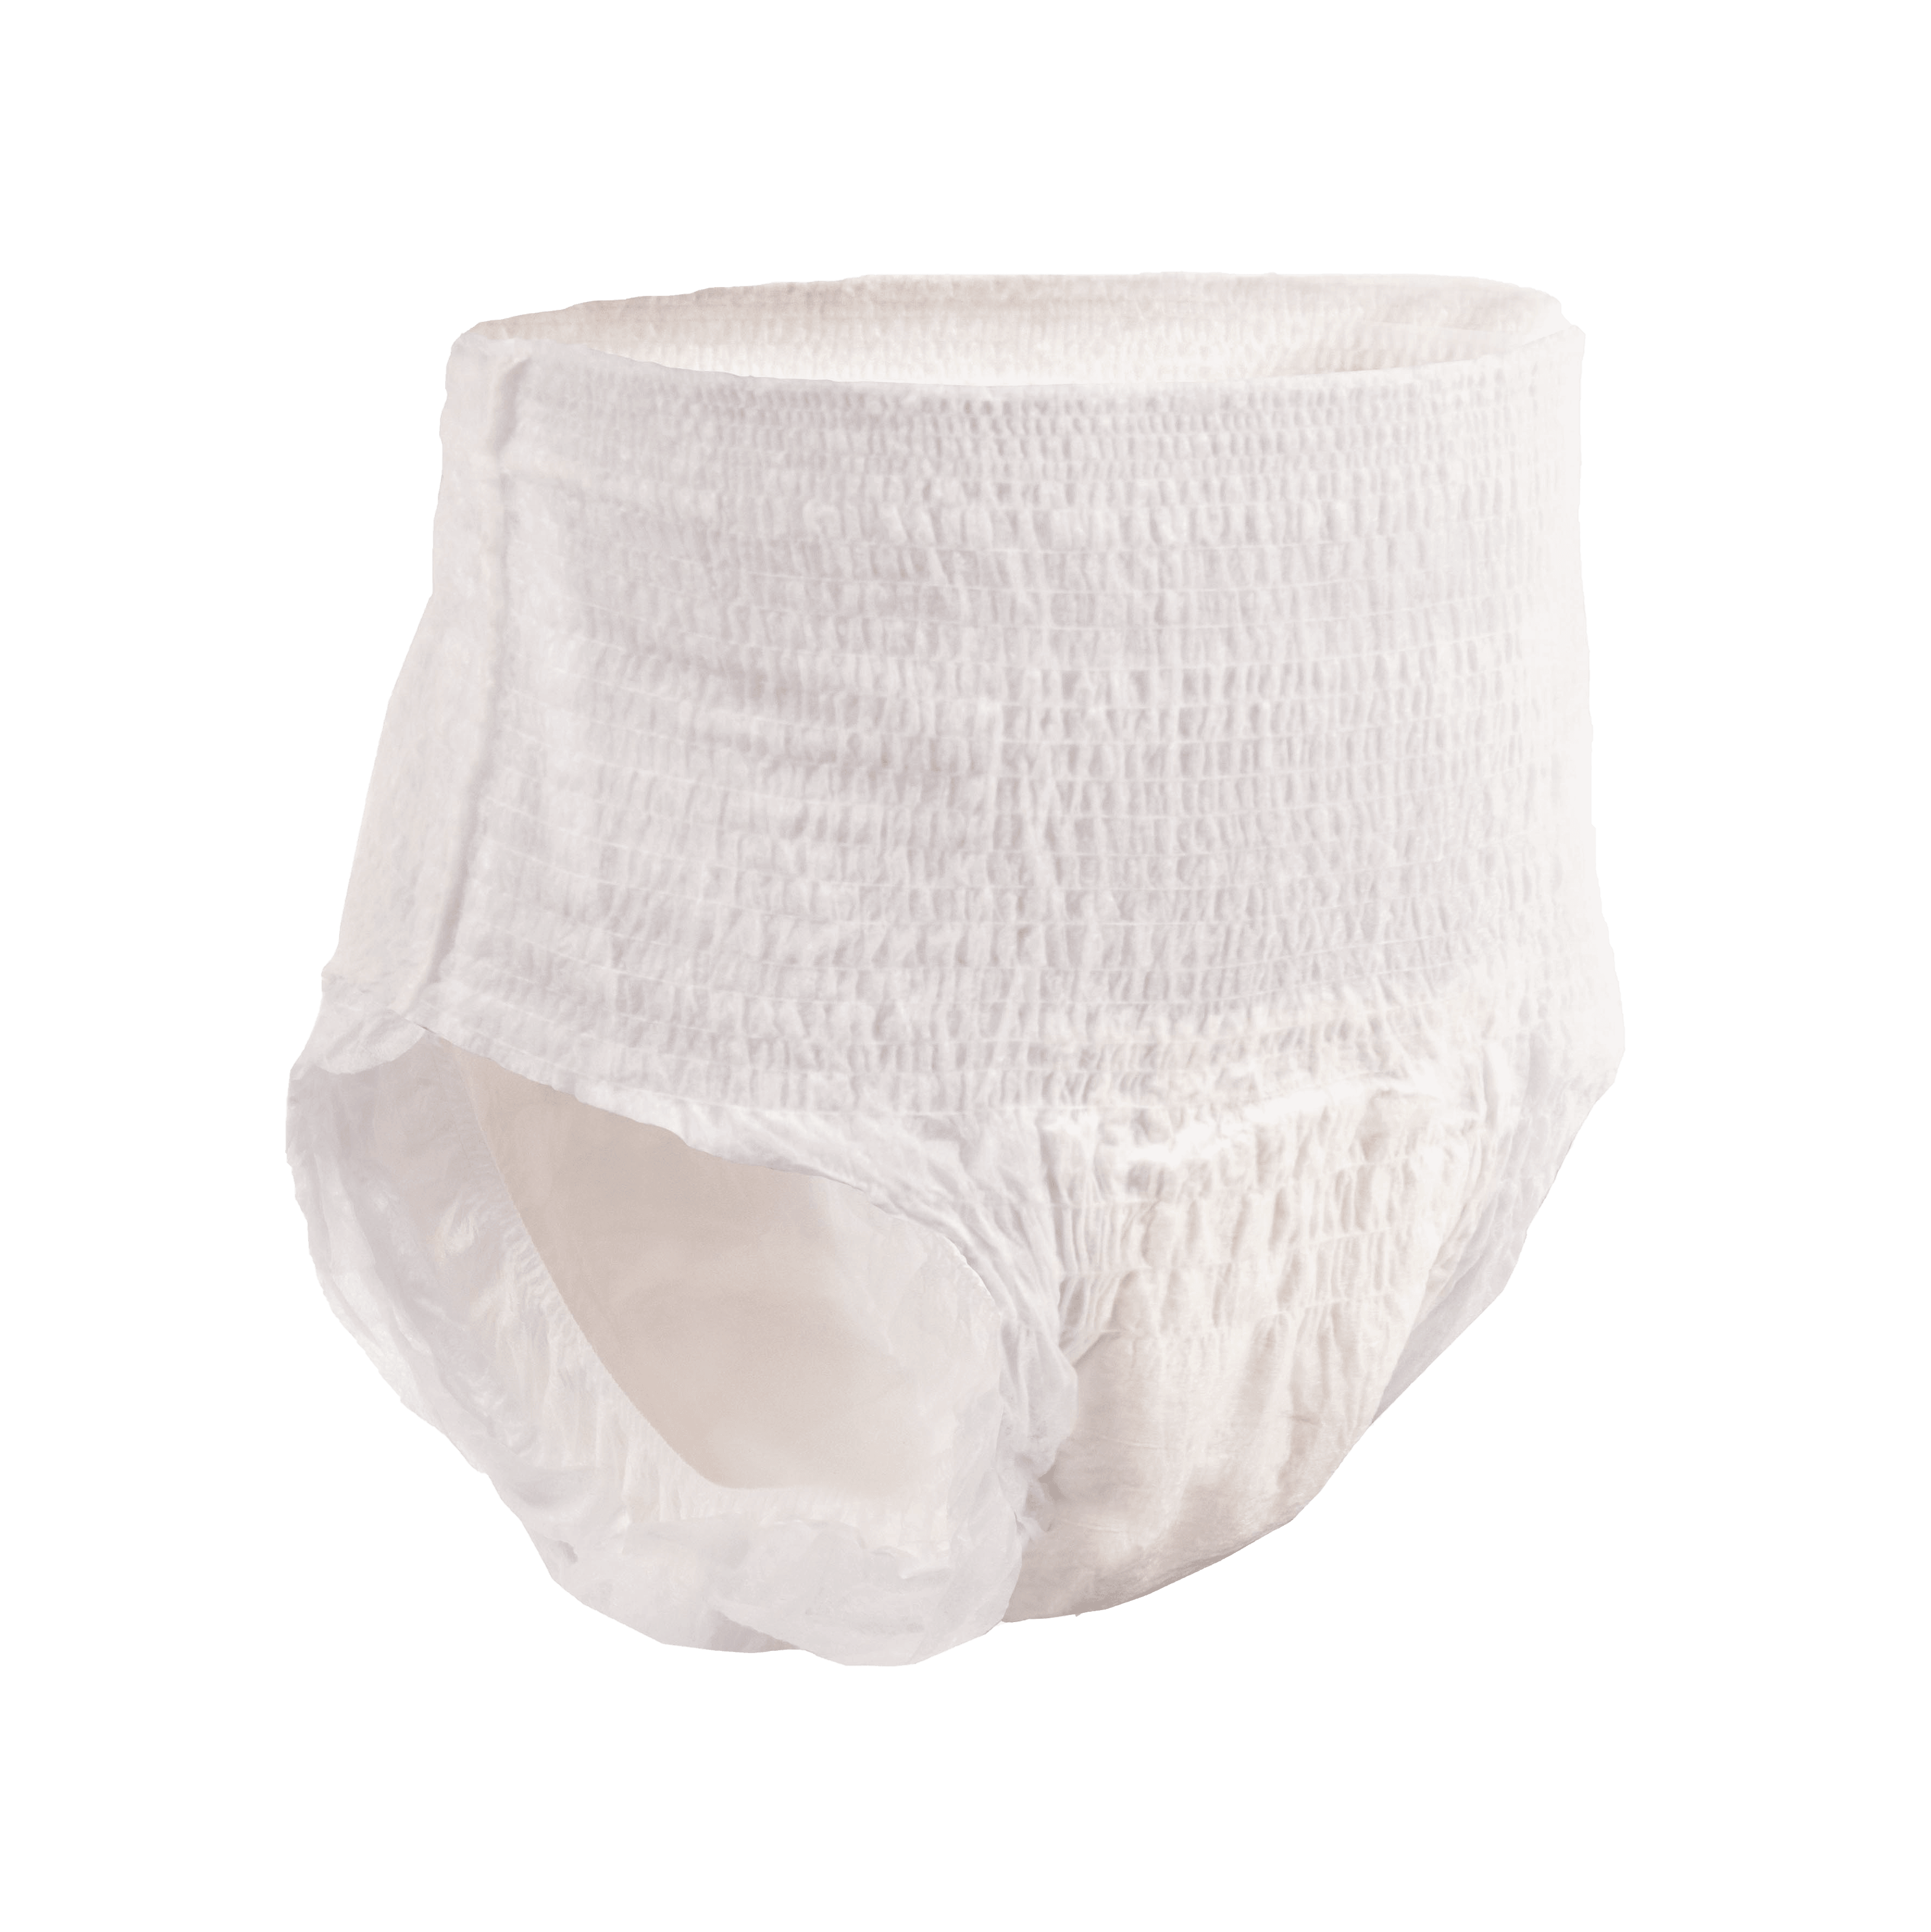 Women's Incontinence Underwear